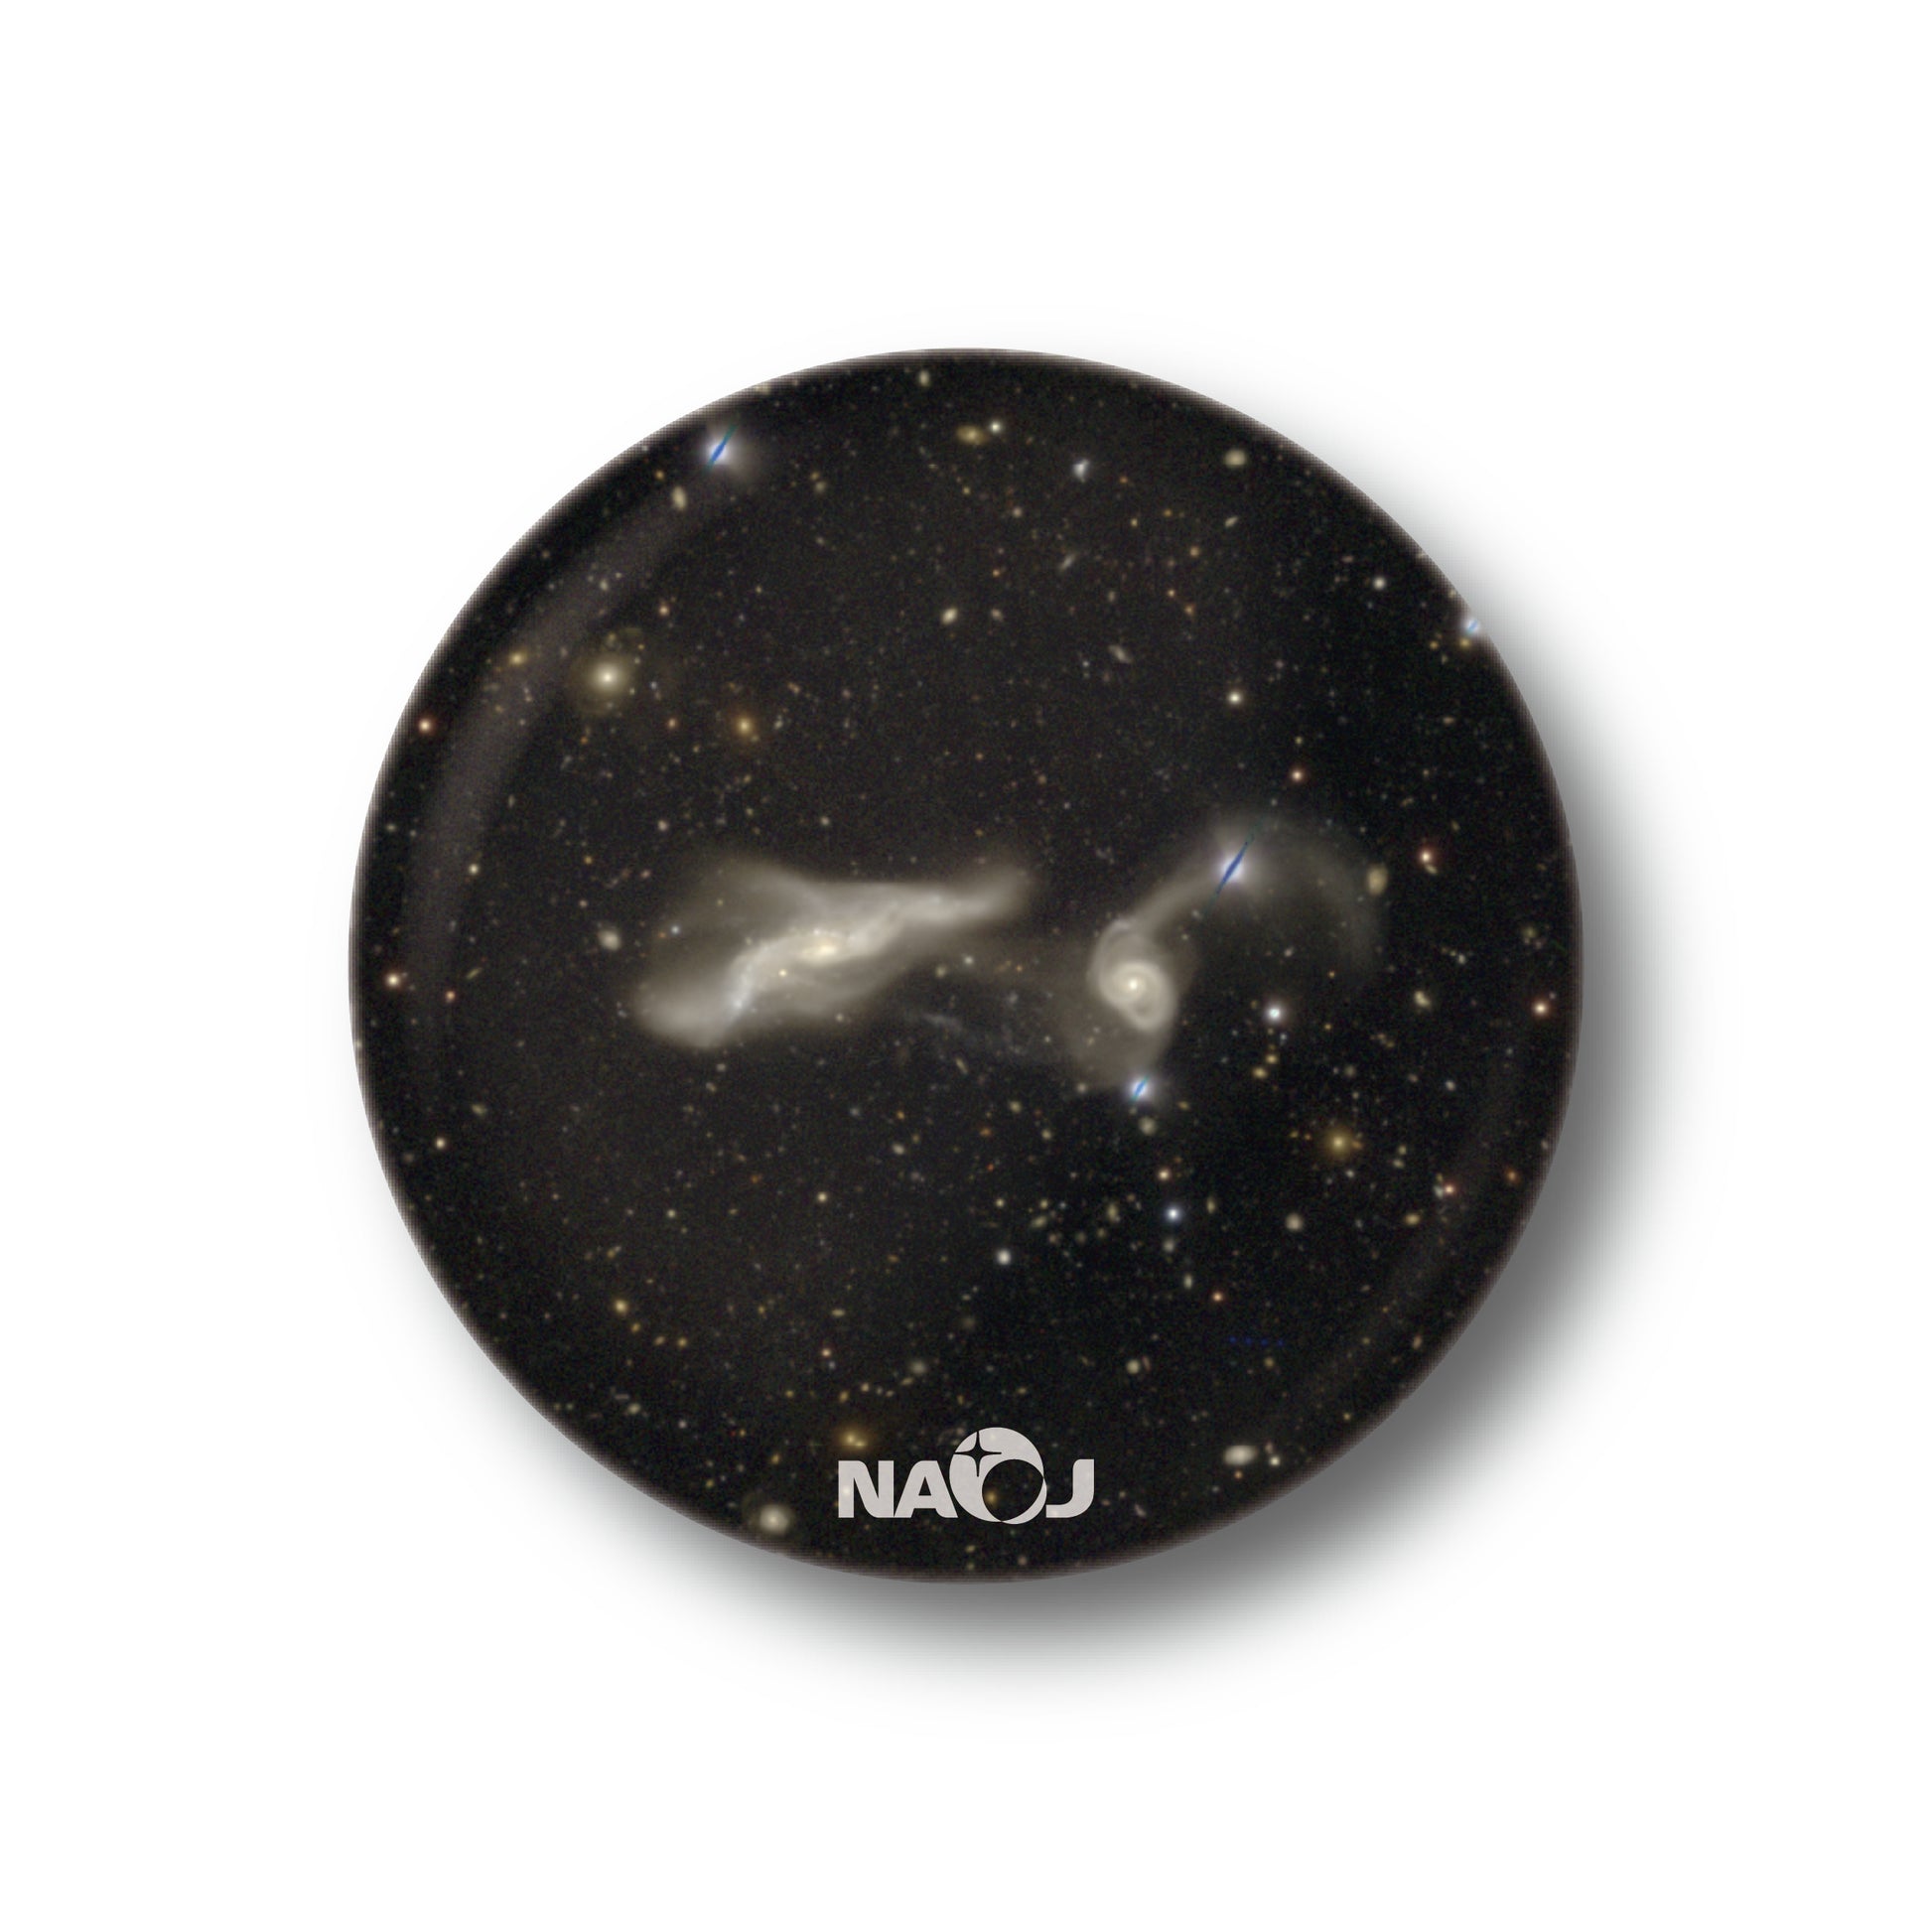 国立天文台  すばる望遠鏡HSCで見る宇宙  缶バッジ [小] 衝突銀河 UGC12589&2MASXJ23250382+0001068 01